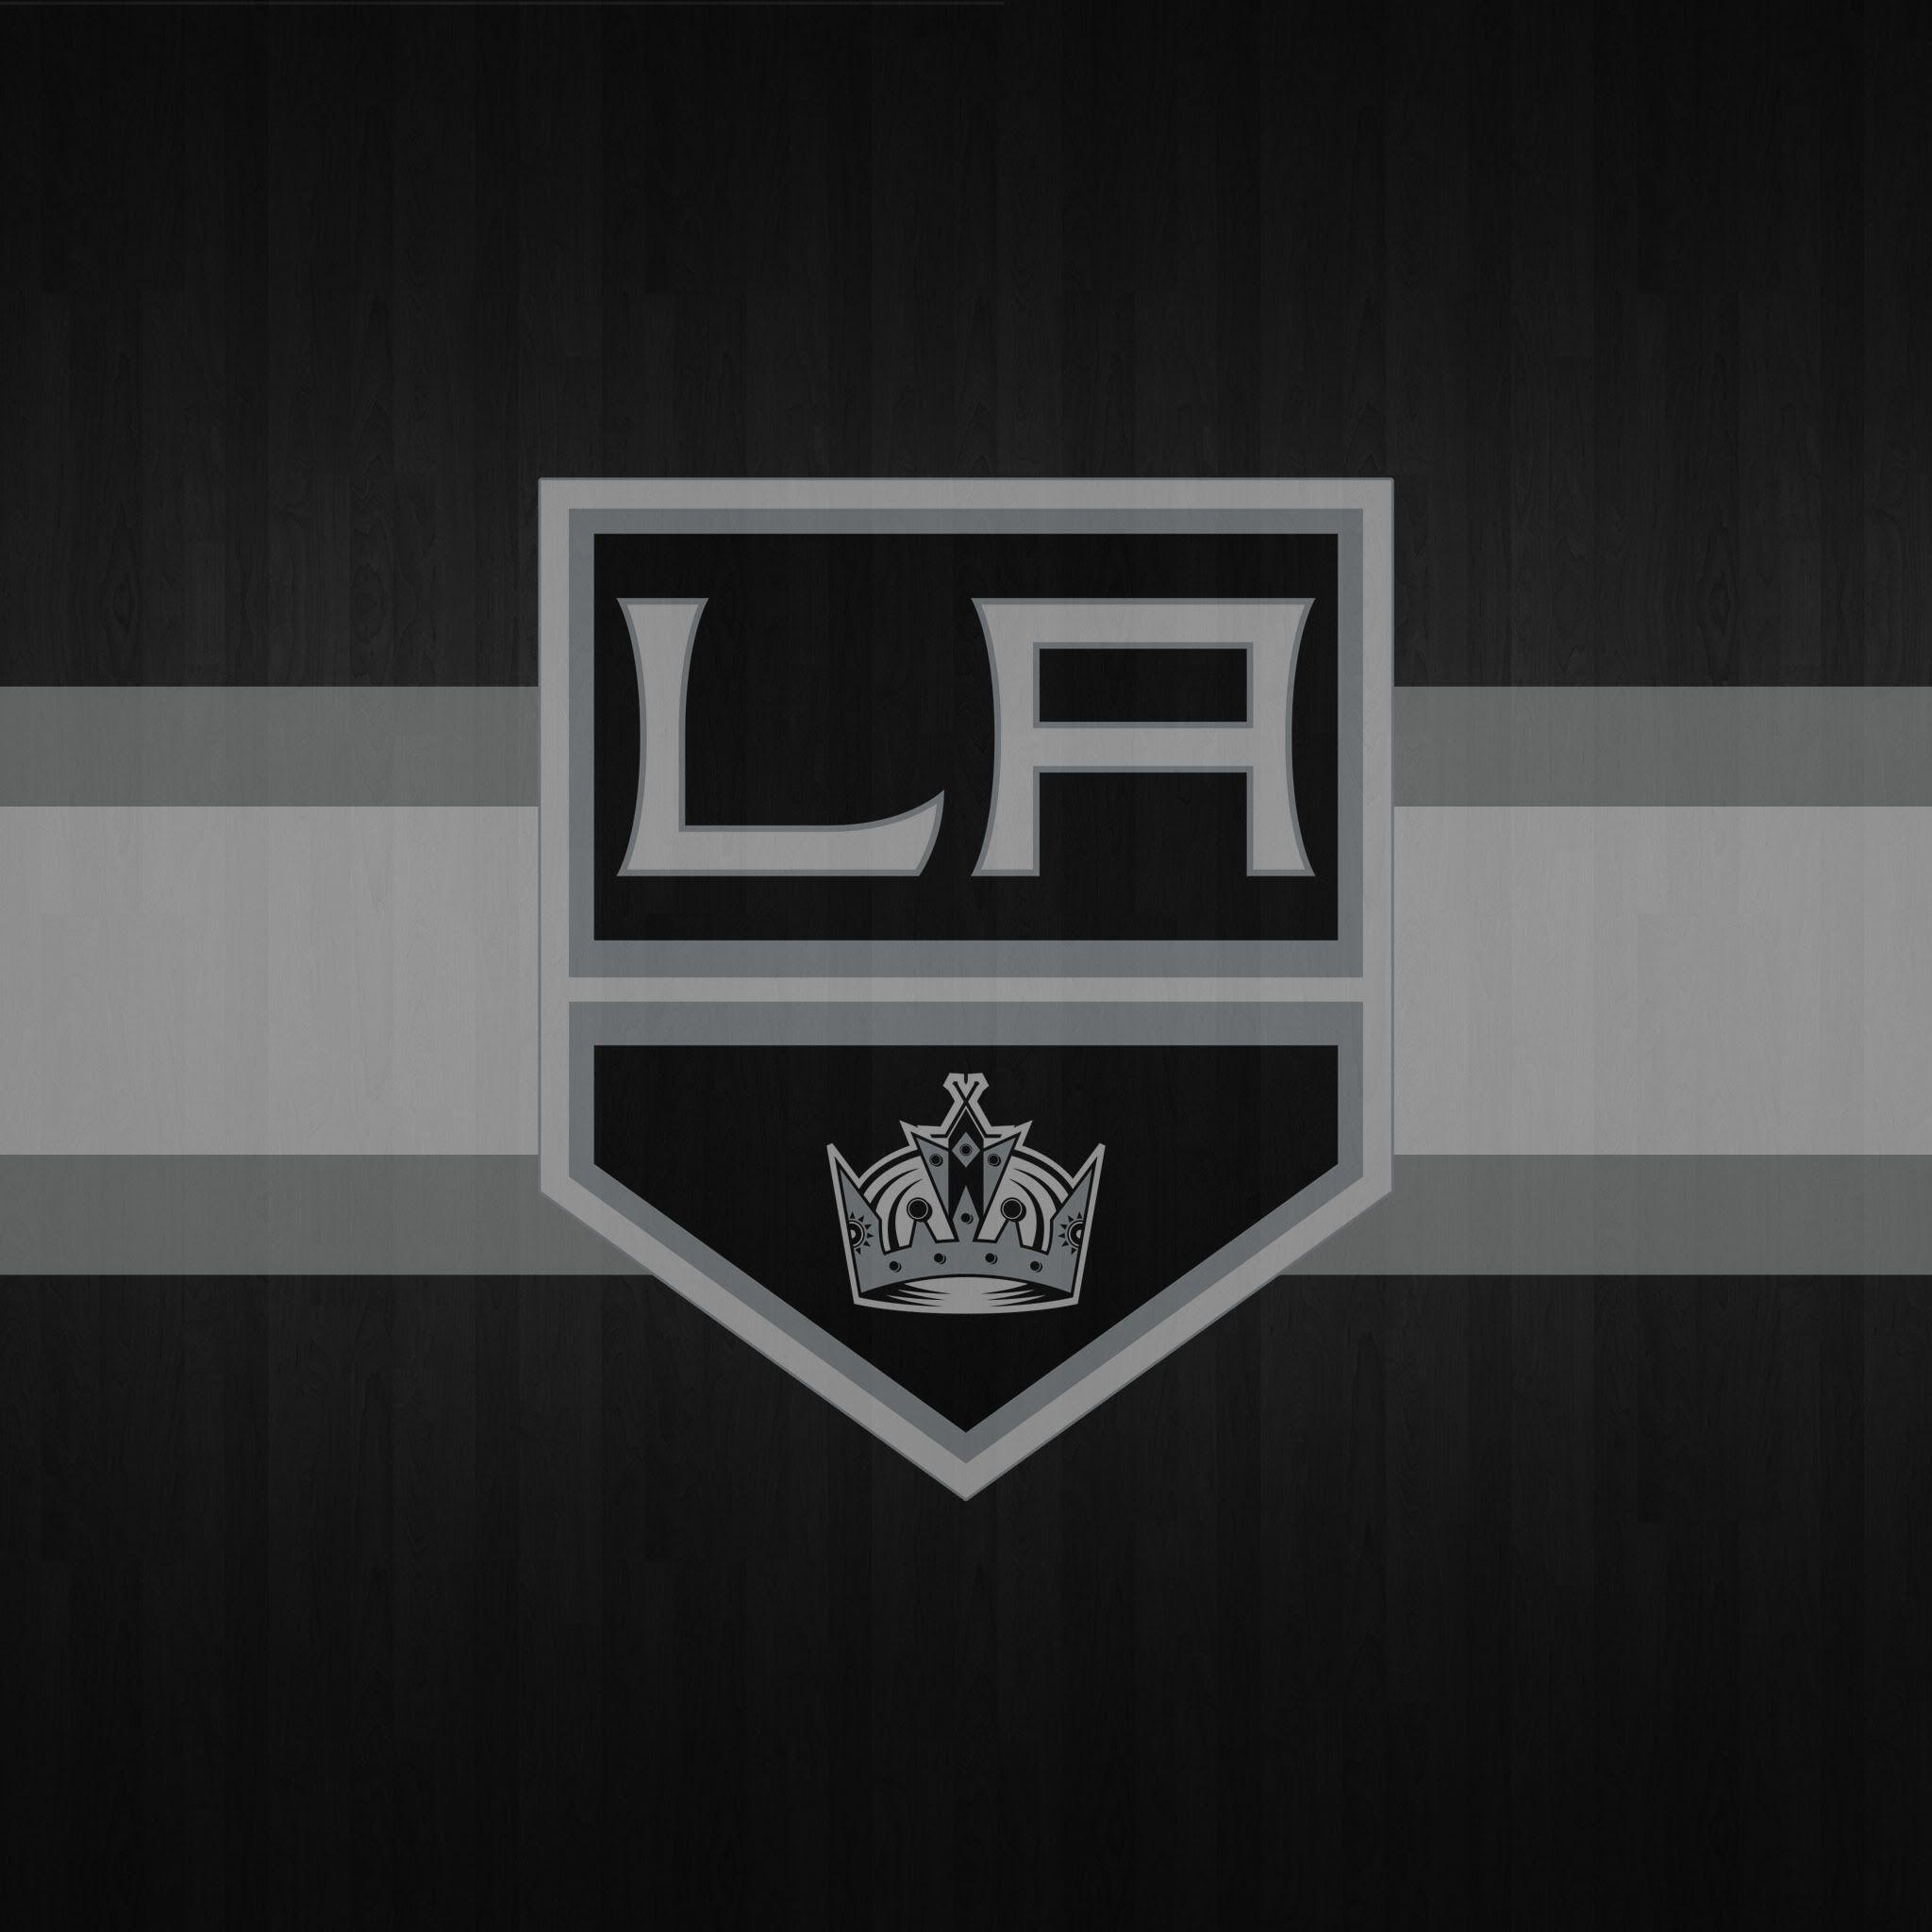 Image For > La Kings Logo 2014